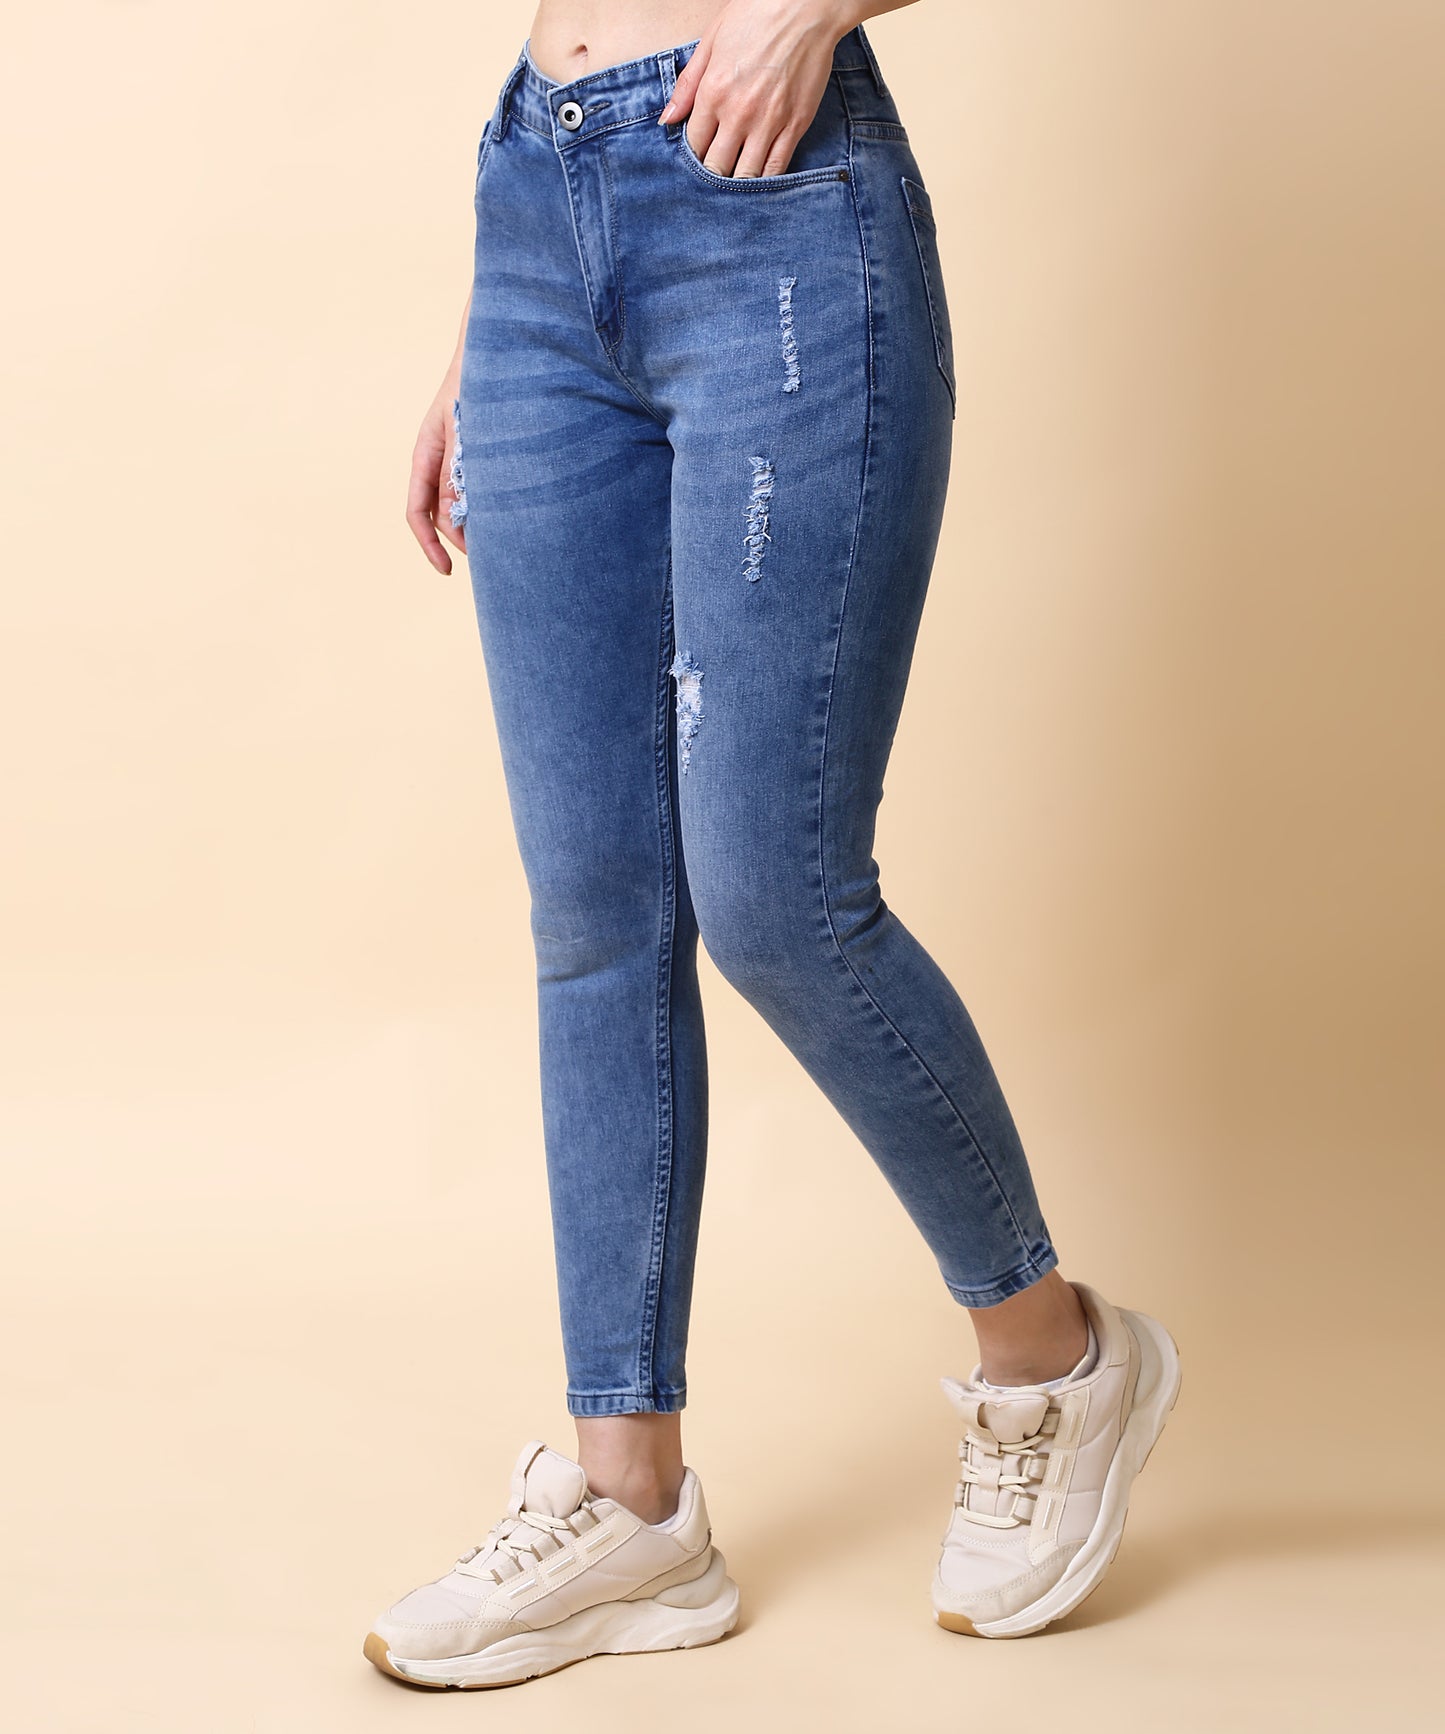 Women Skinny Light Blue Denim Jeans